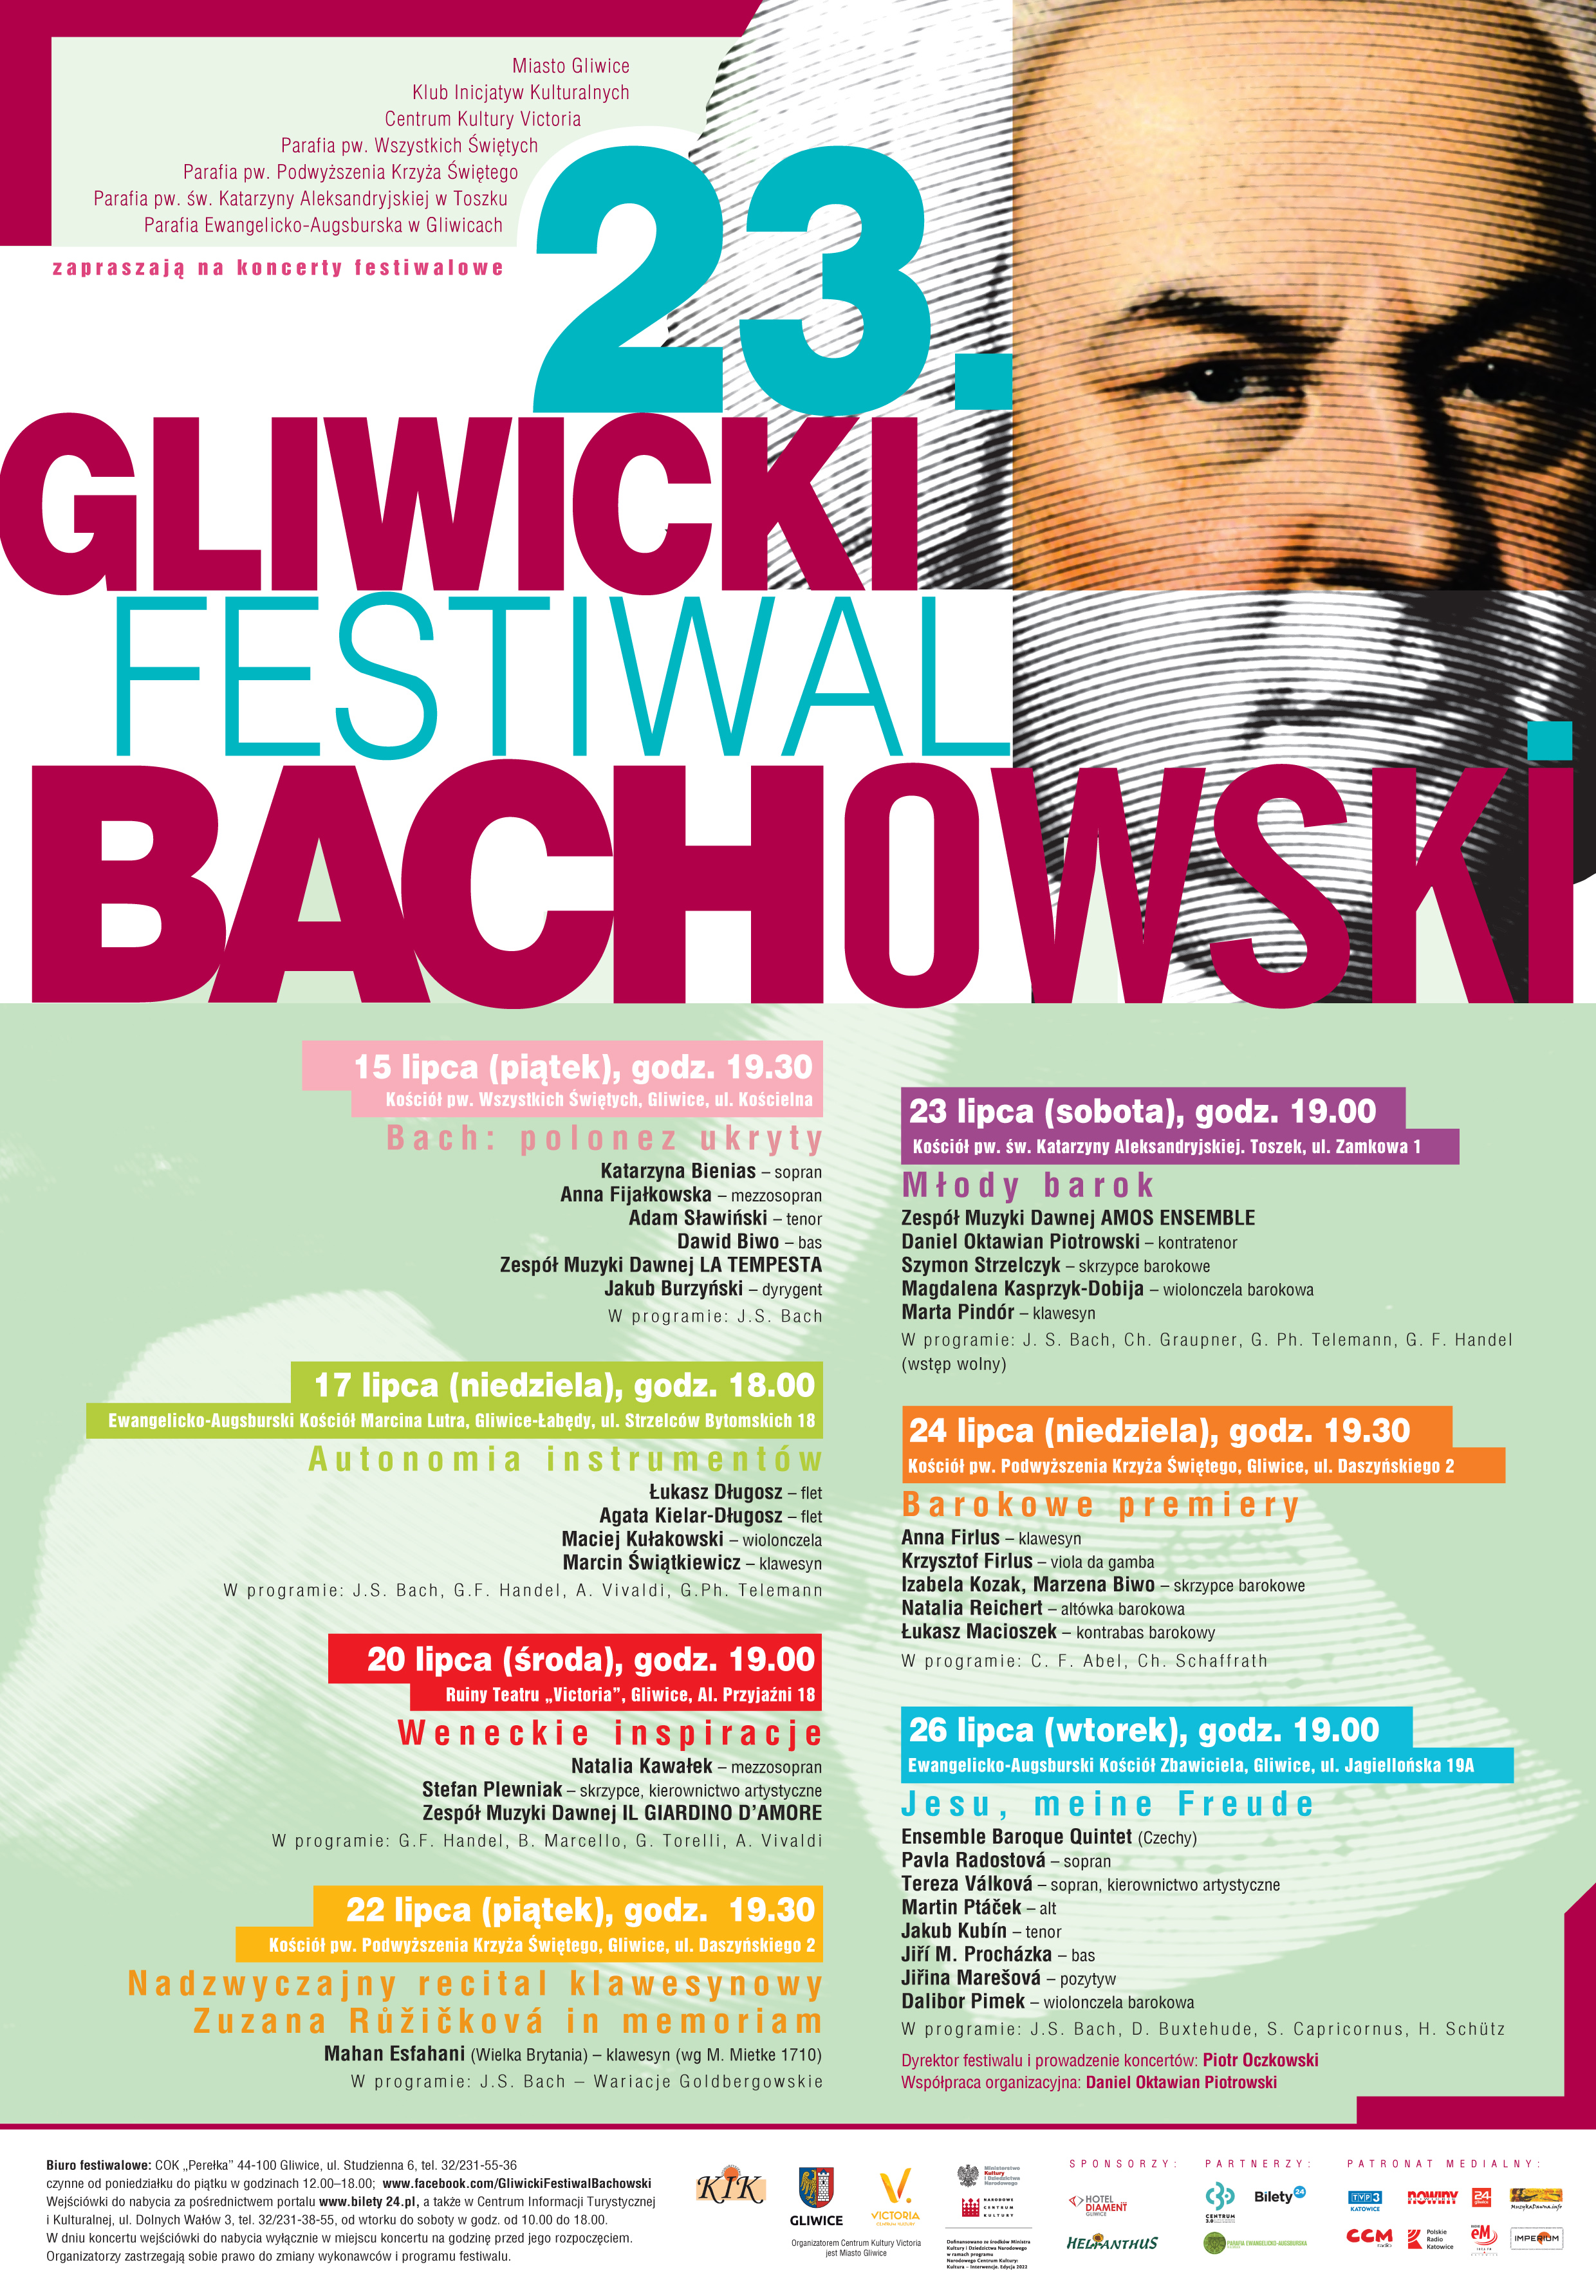 plakat przedstawiający pełny program Gliwickiego Festiwalu Bachowskiego